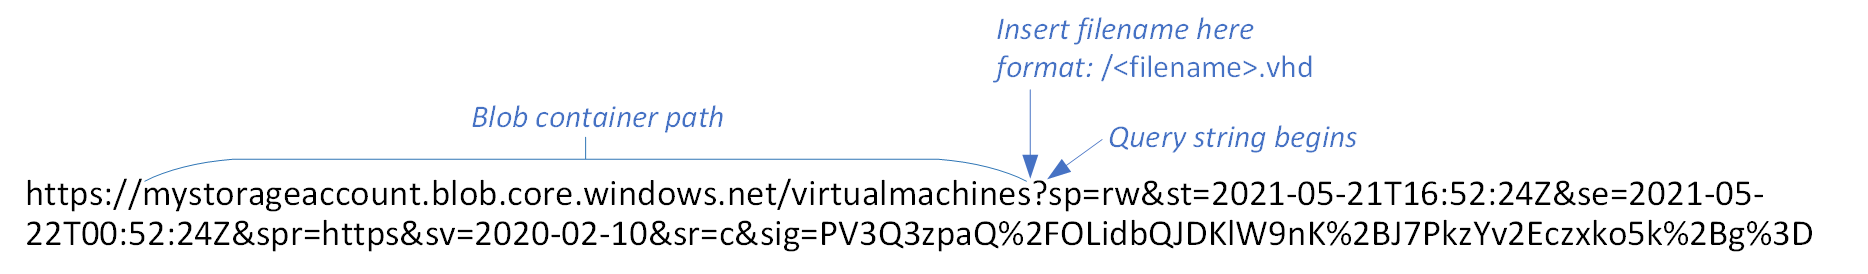 Immagine di un URL di firma di accesso condiviso BLOB, con percorso del contenitore e posizione in cui inserire il nuovo nome file etichettato